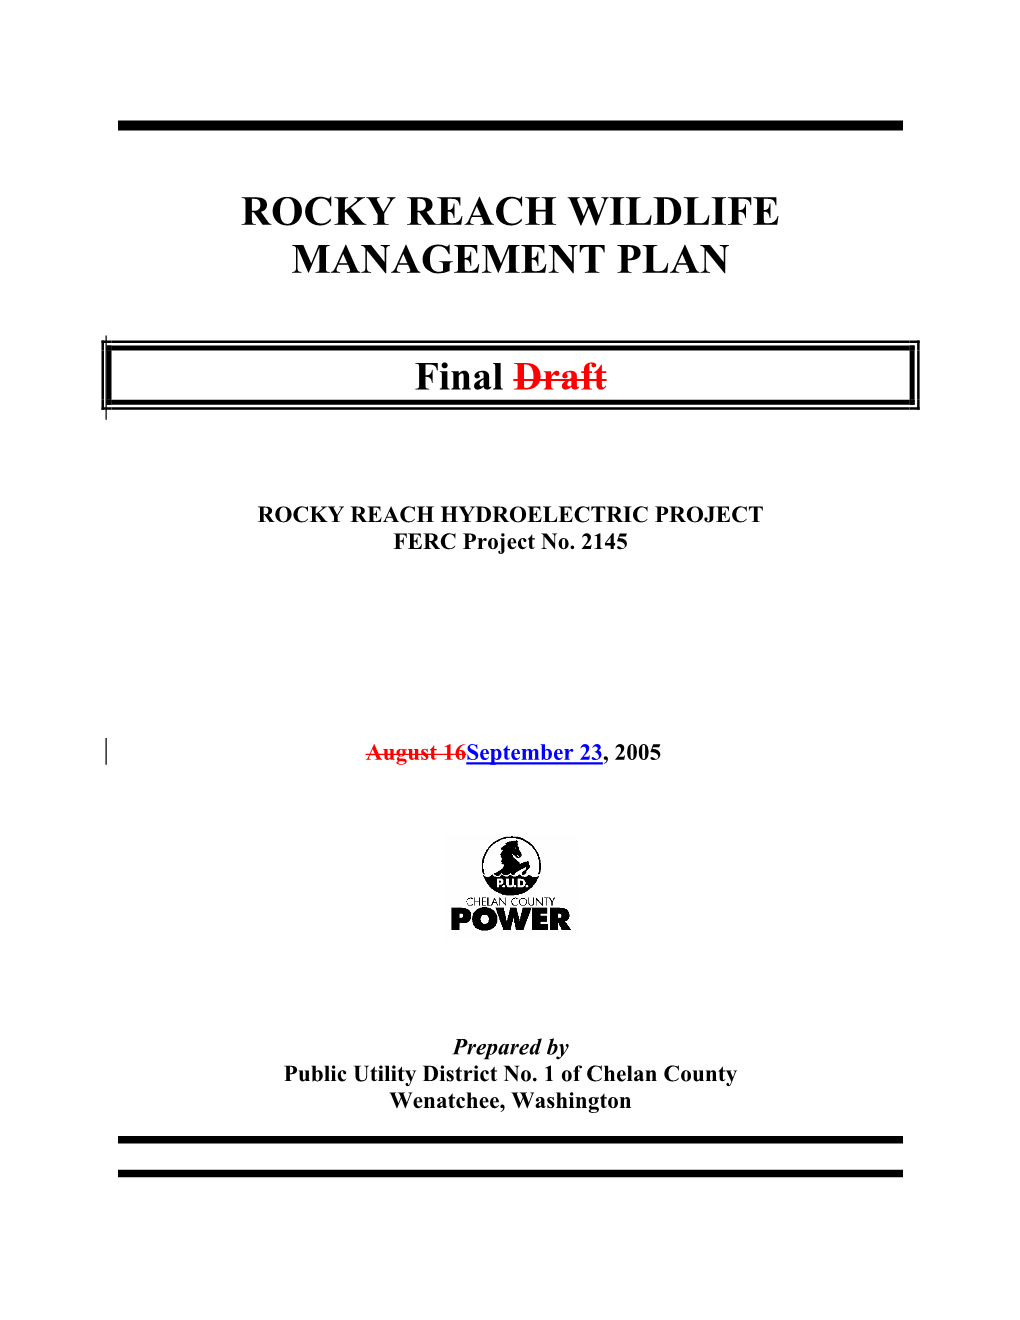 Rocky Reach Wildlife Management Plan